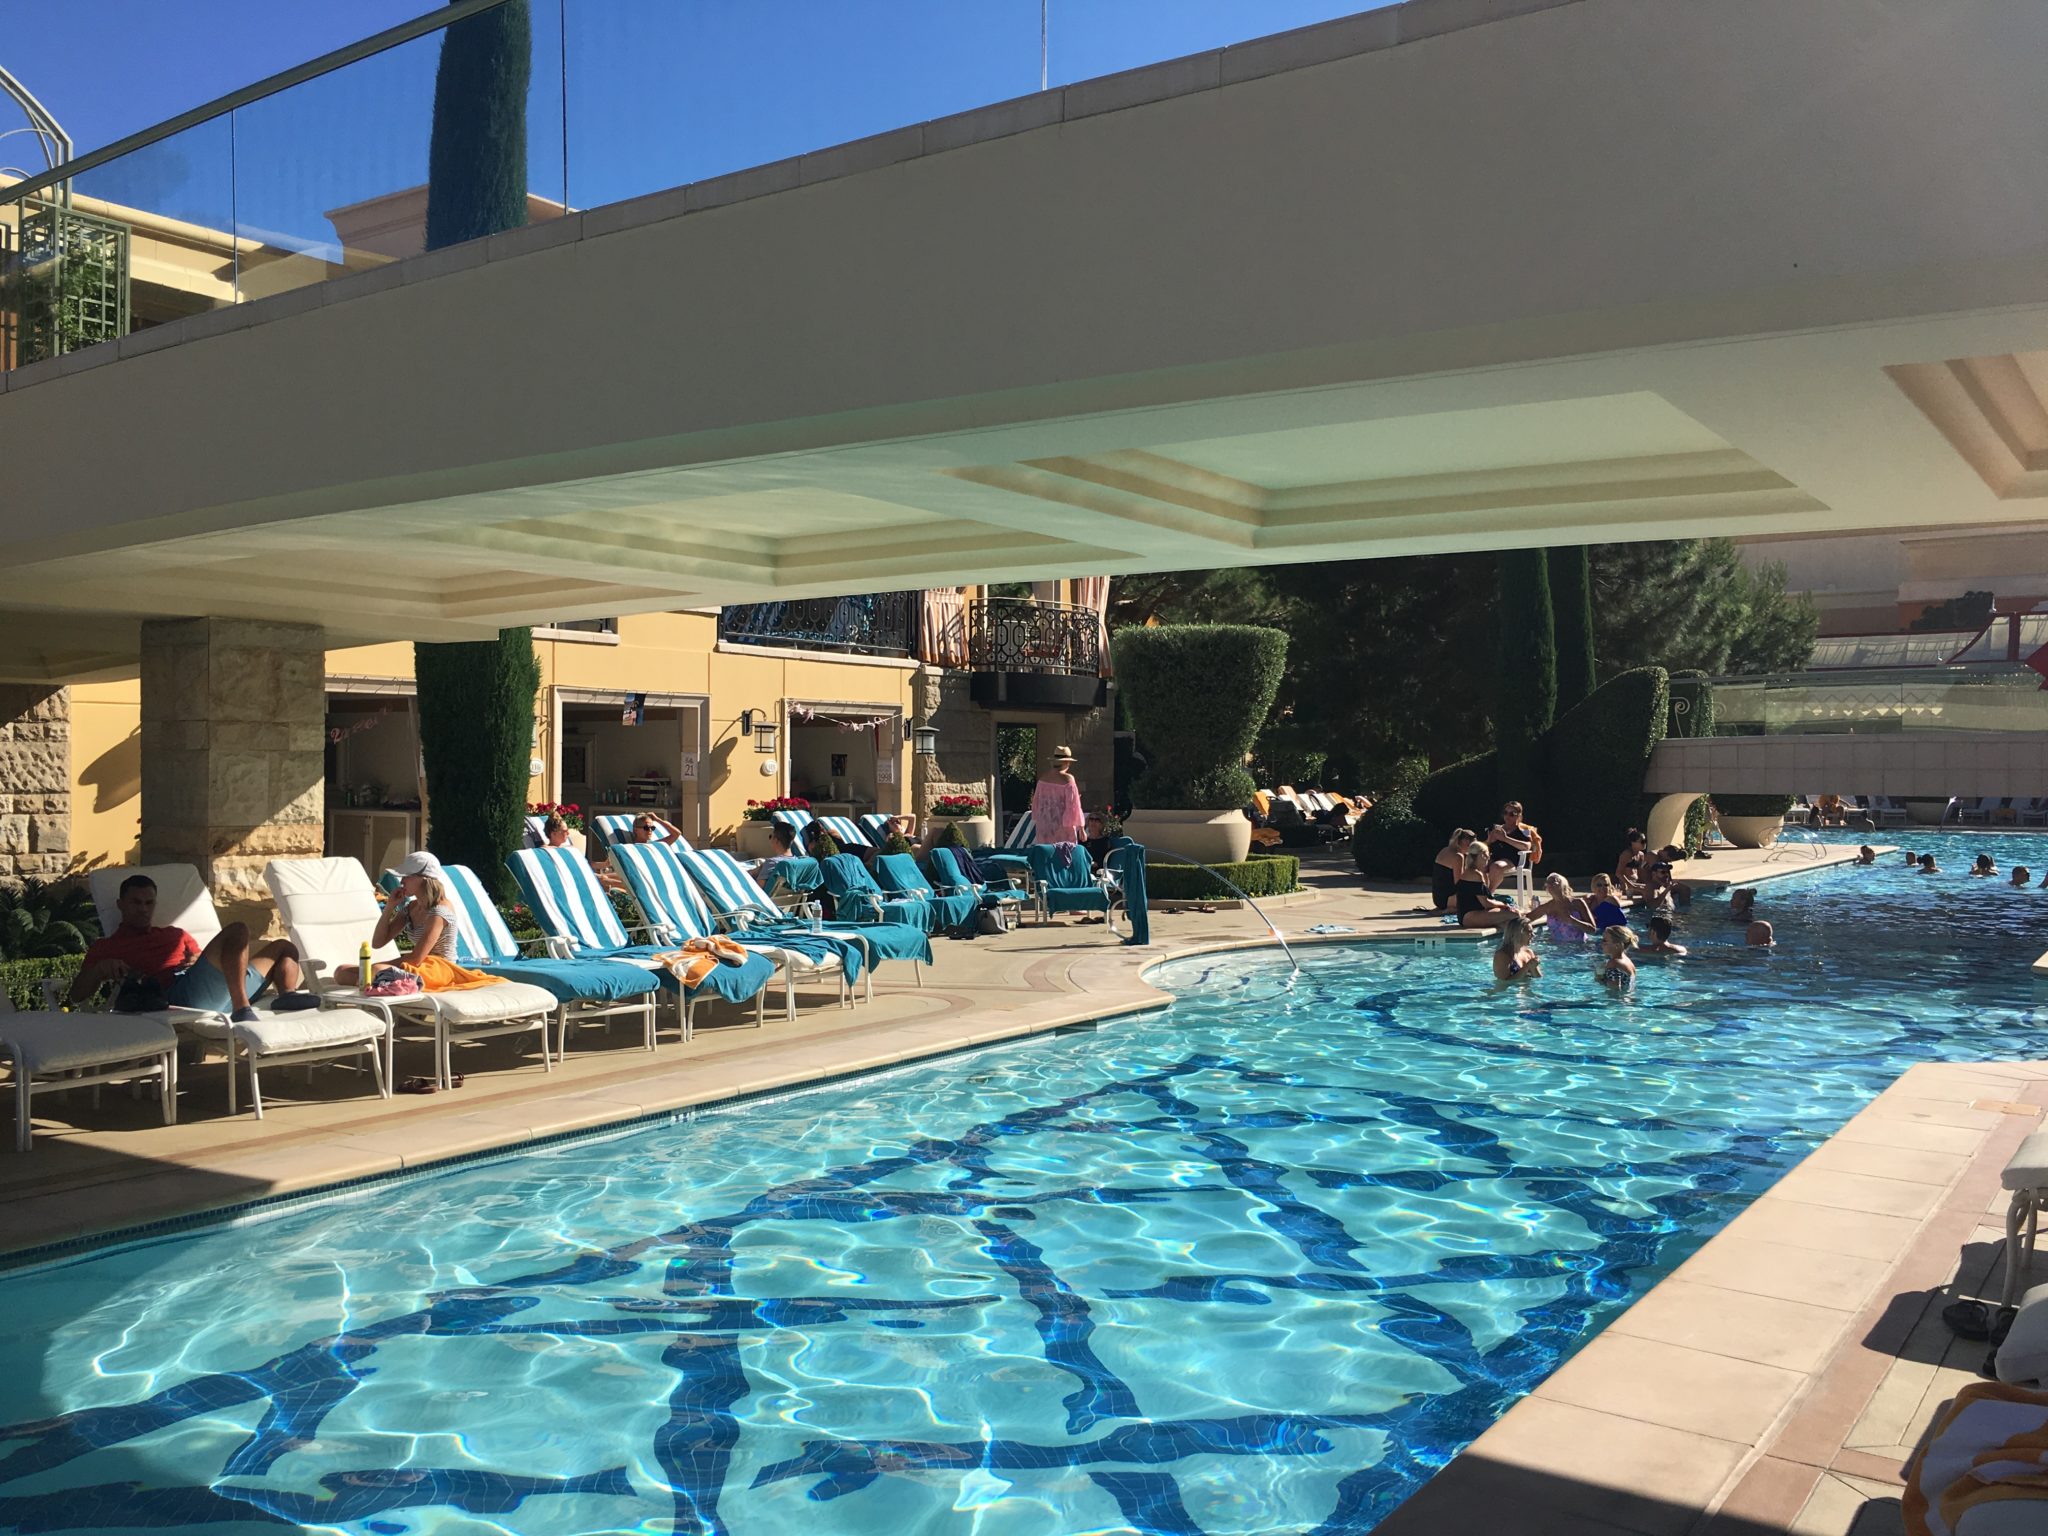 Pool at Wynn Las Vegas